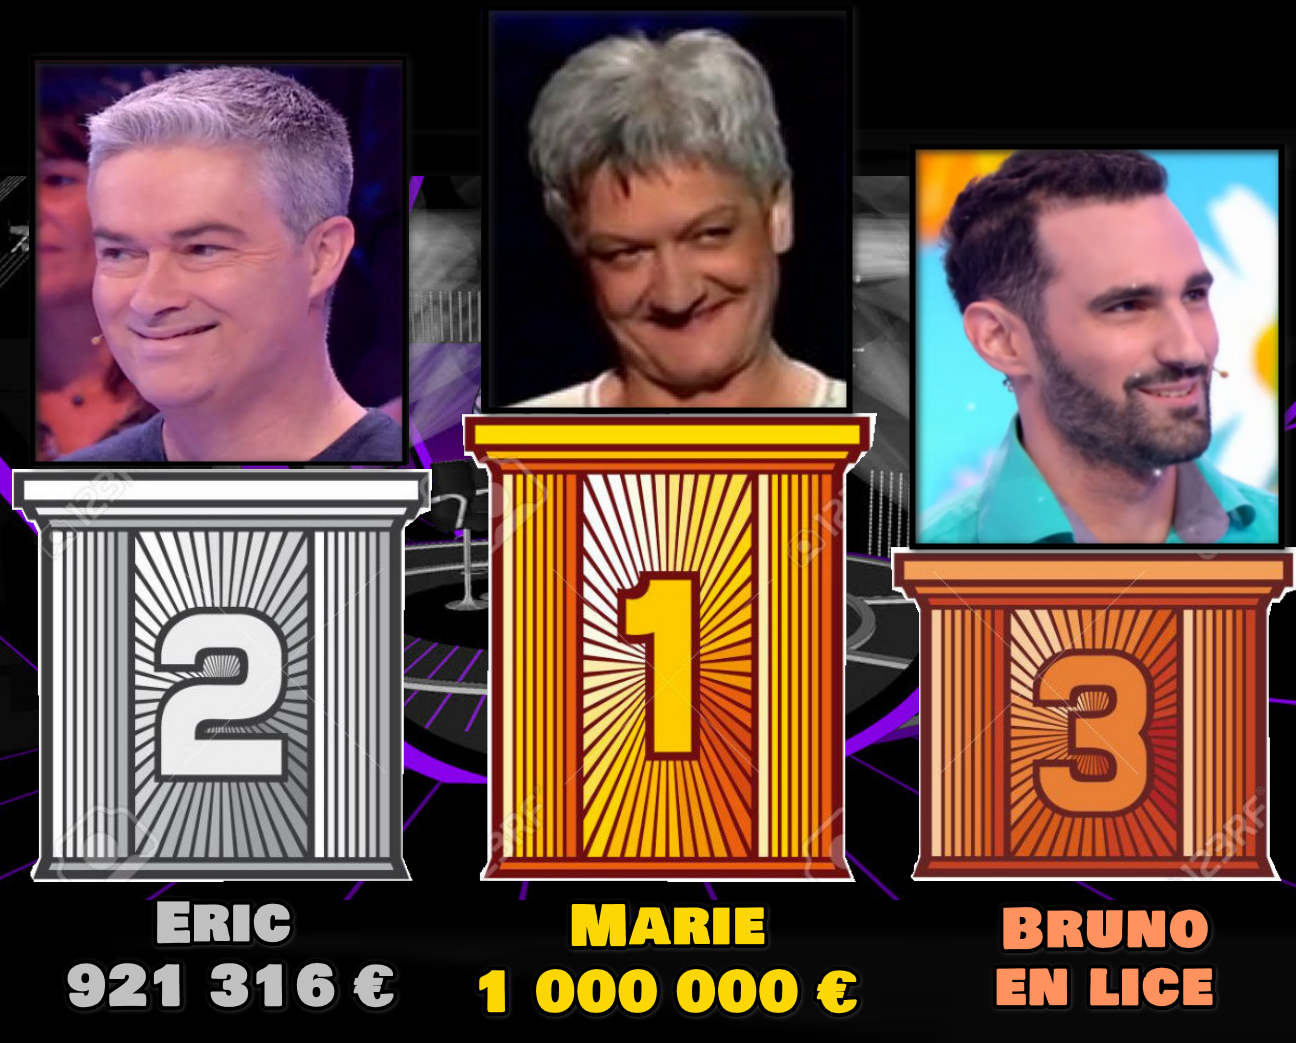 + de 810 000 € et le podium final des + gros gains dans un jeu TV atteint par Bruno !!!